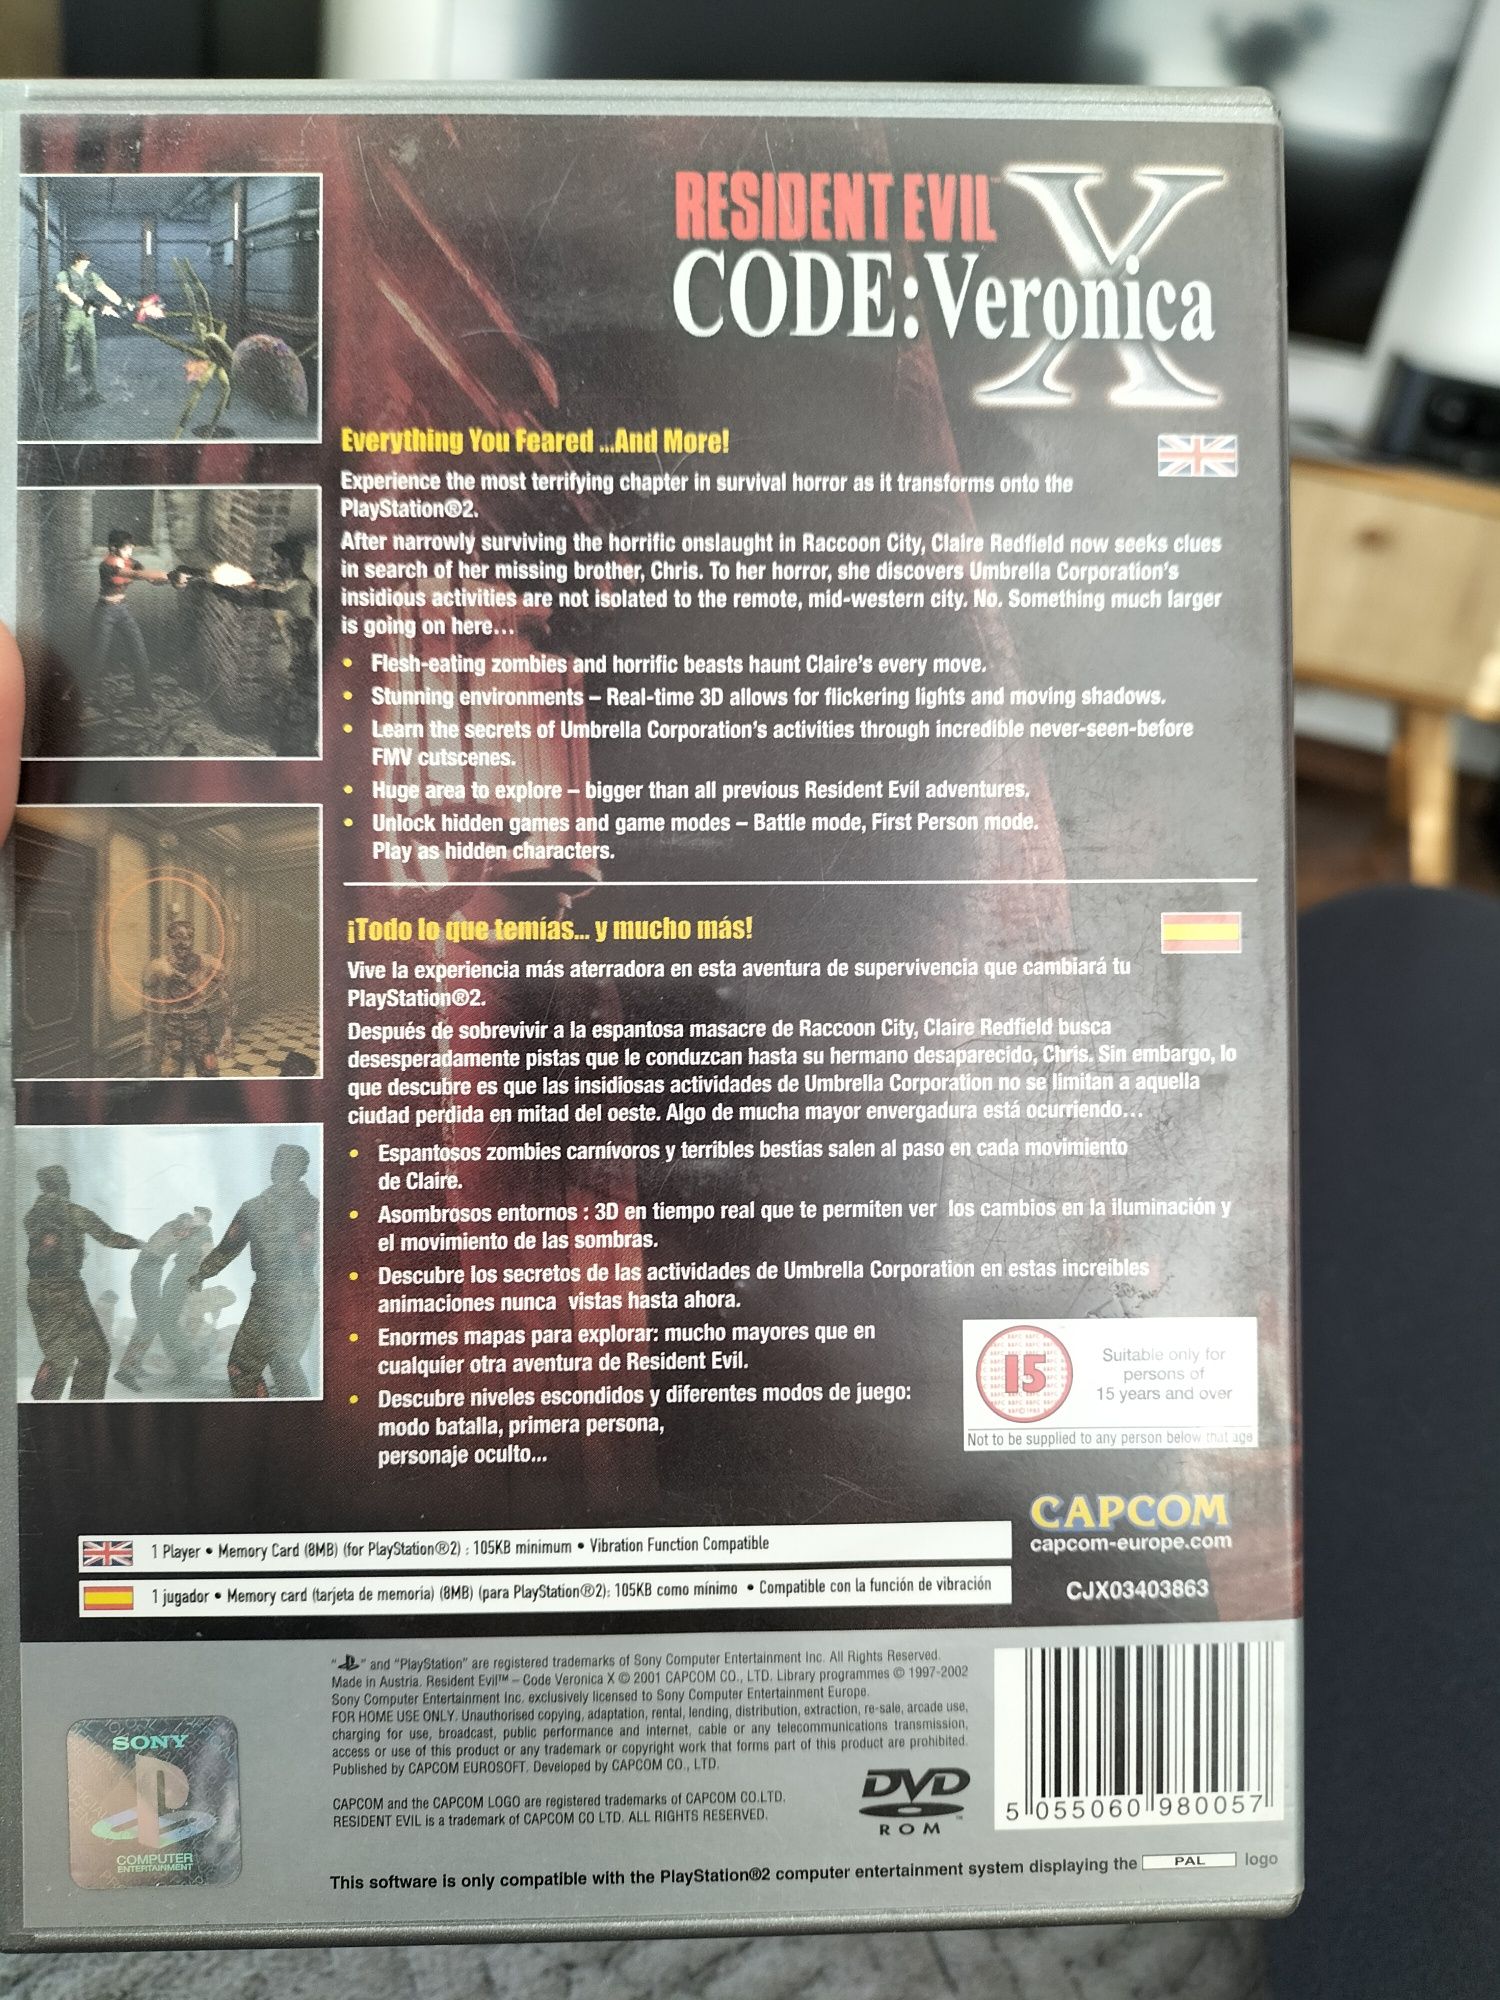 Resident evil code: Veronica